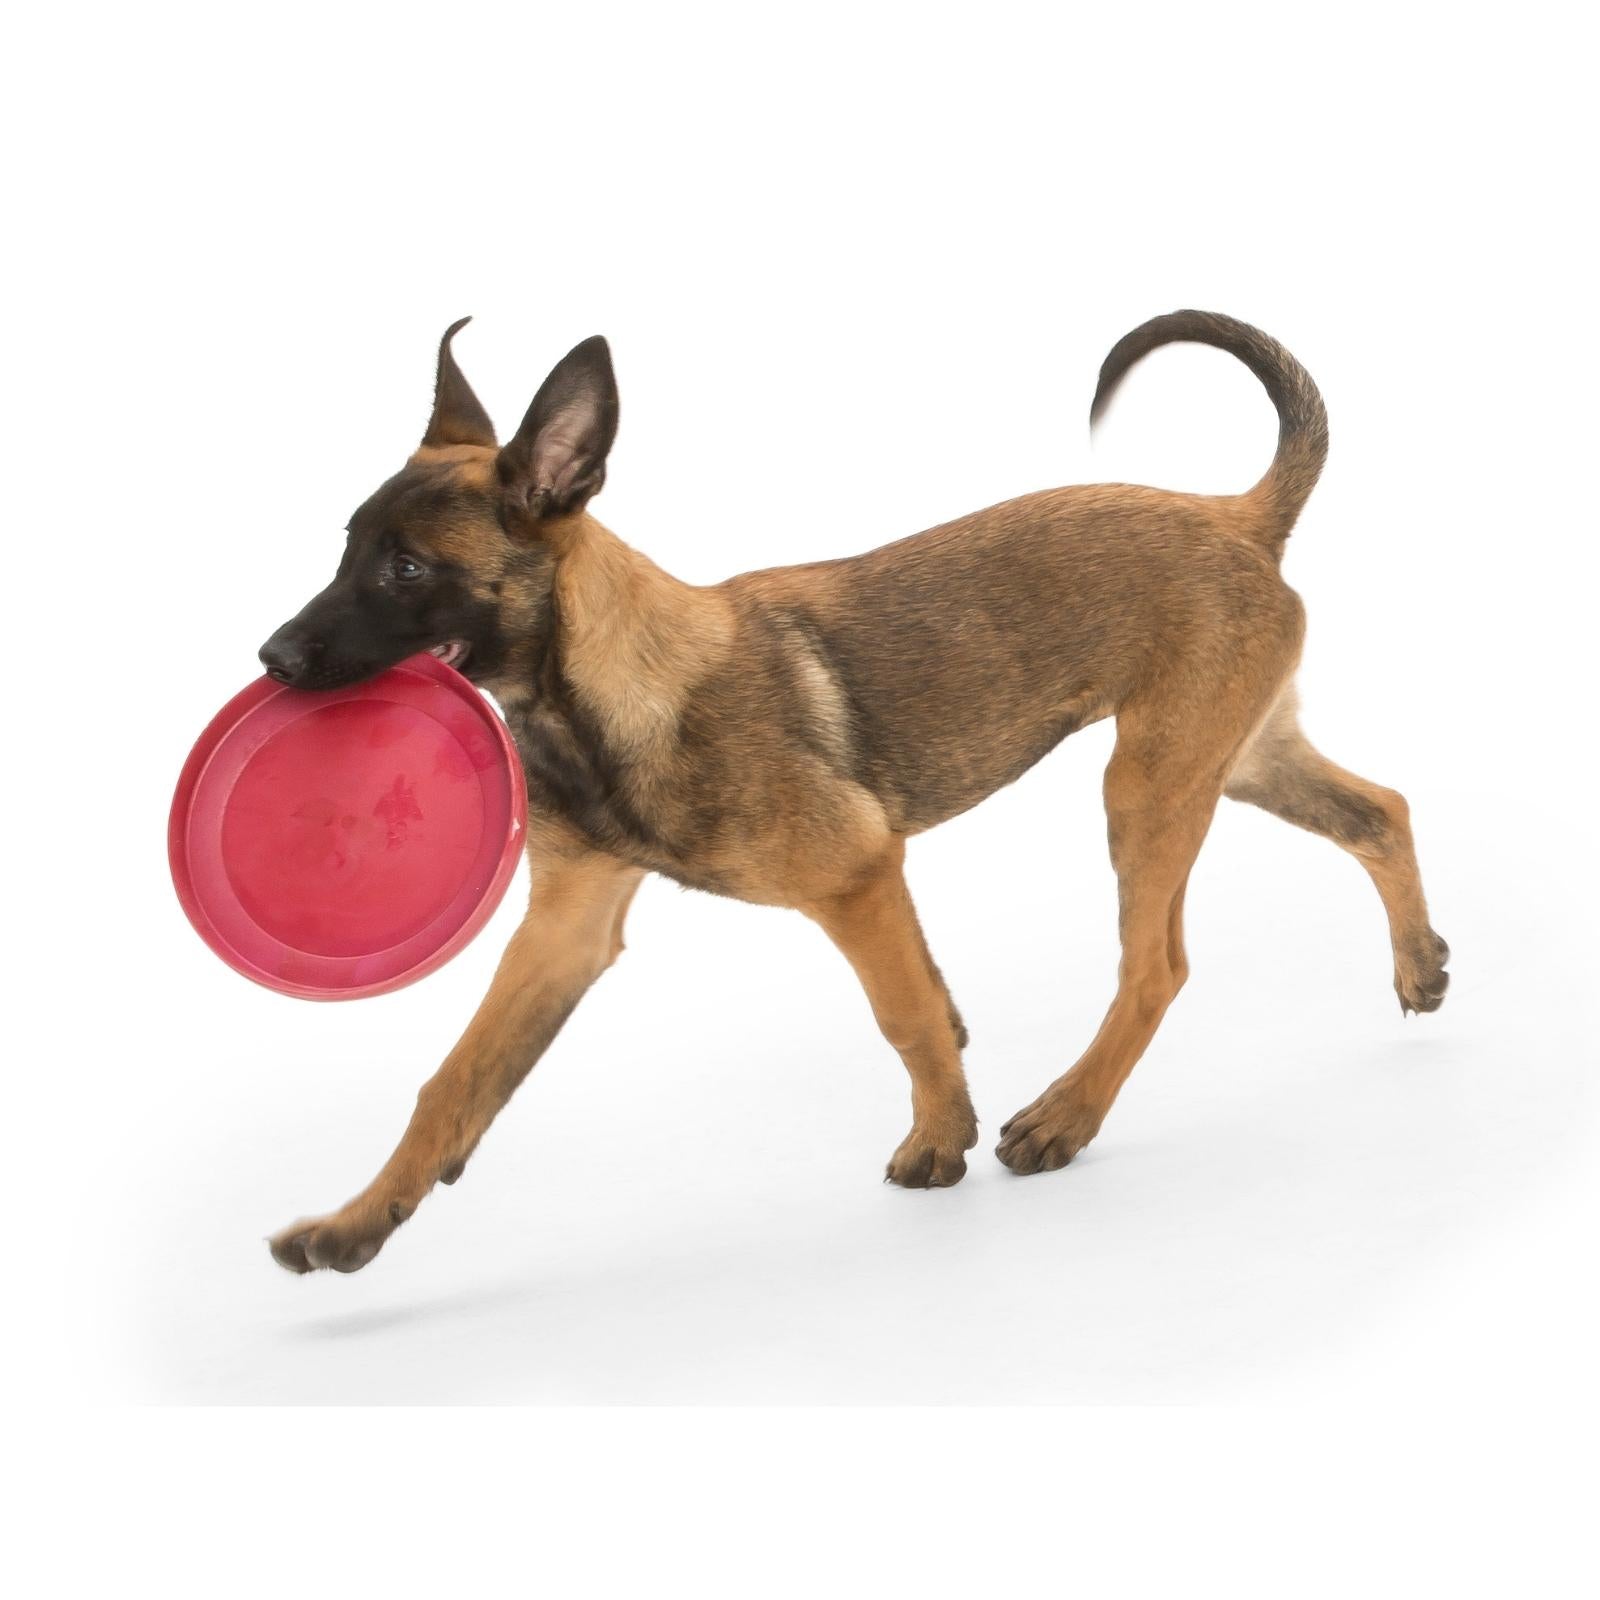 Frisbee Flexible para Perros desde 0.48 € - ¡Compra Ya! 🐕✨